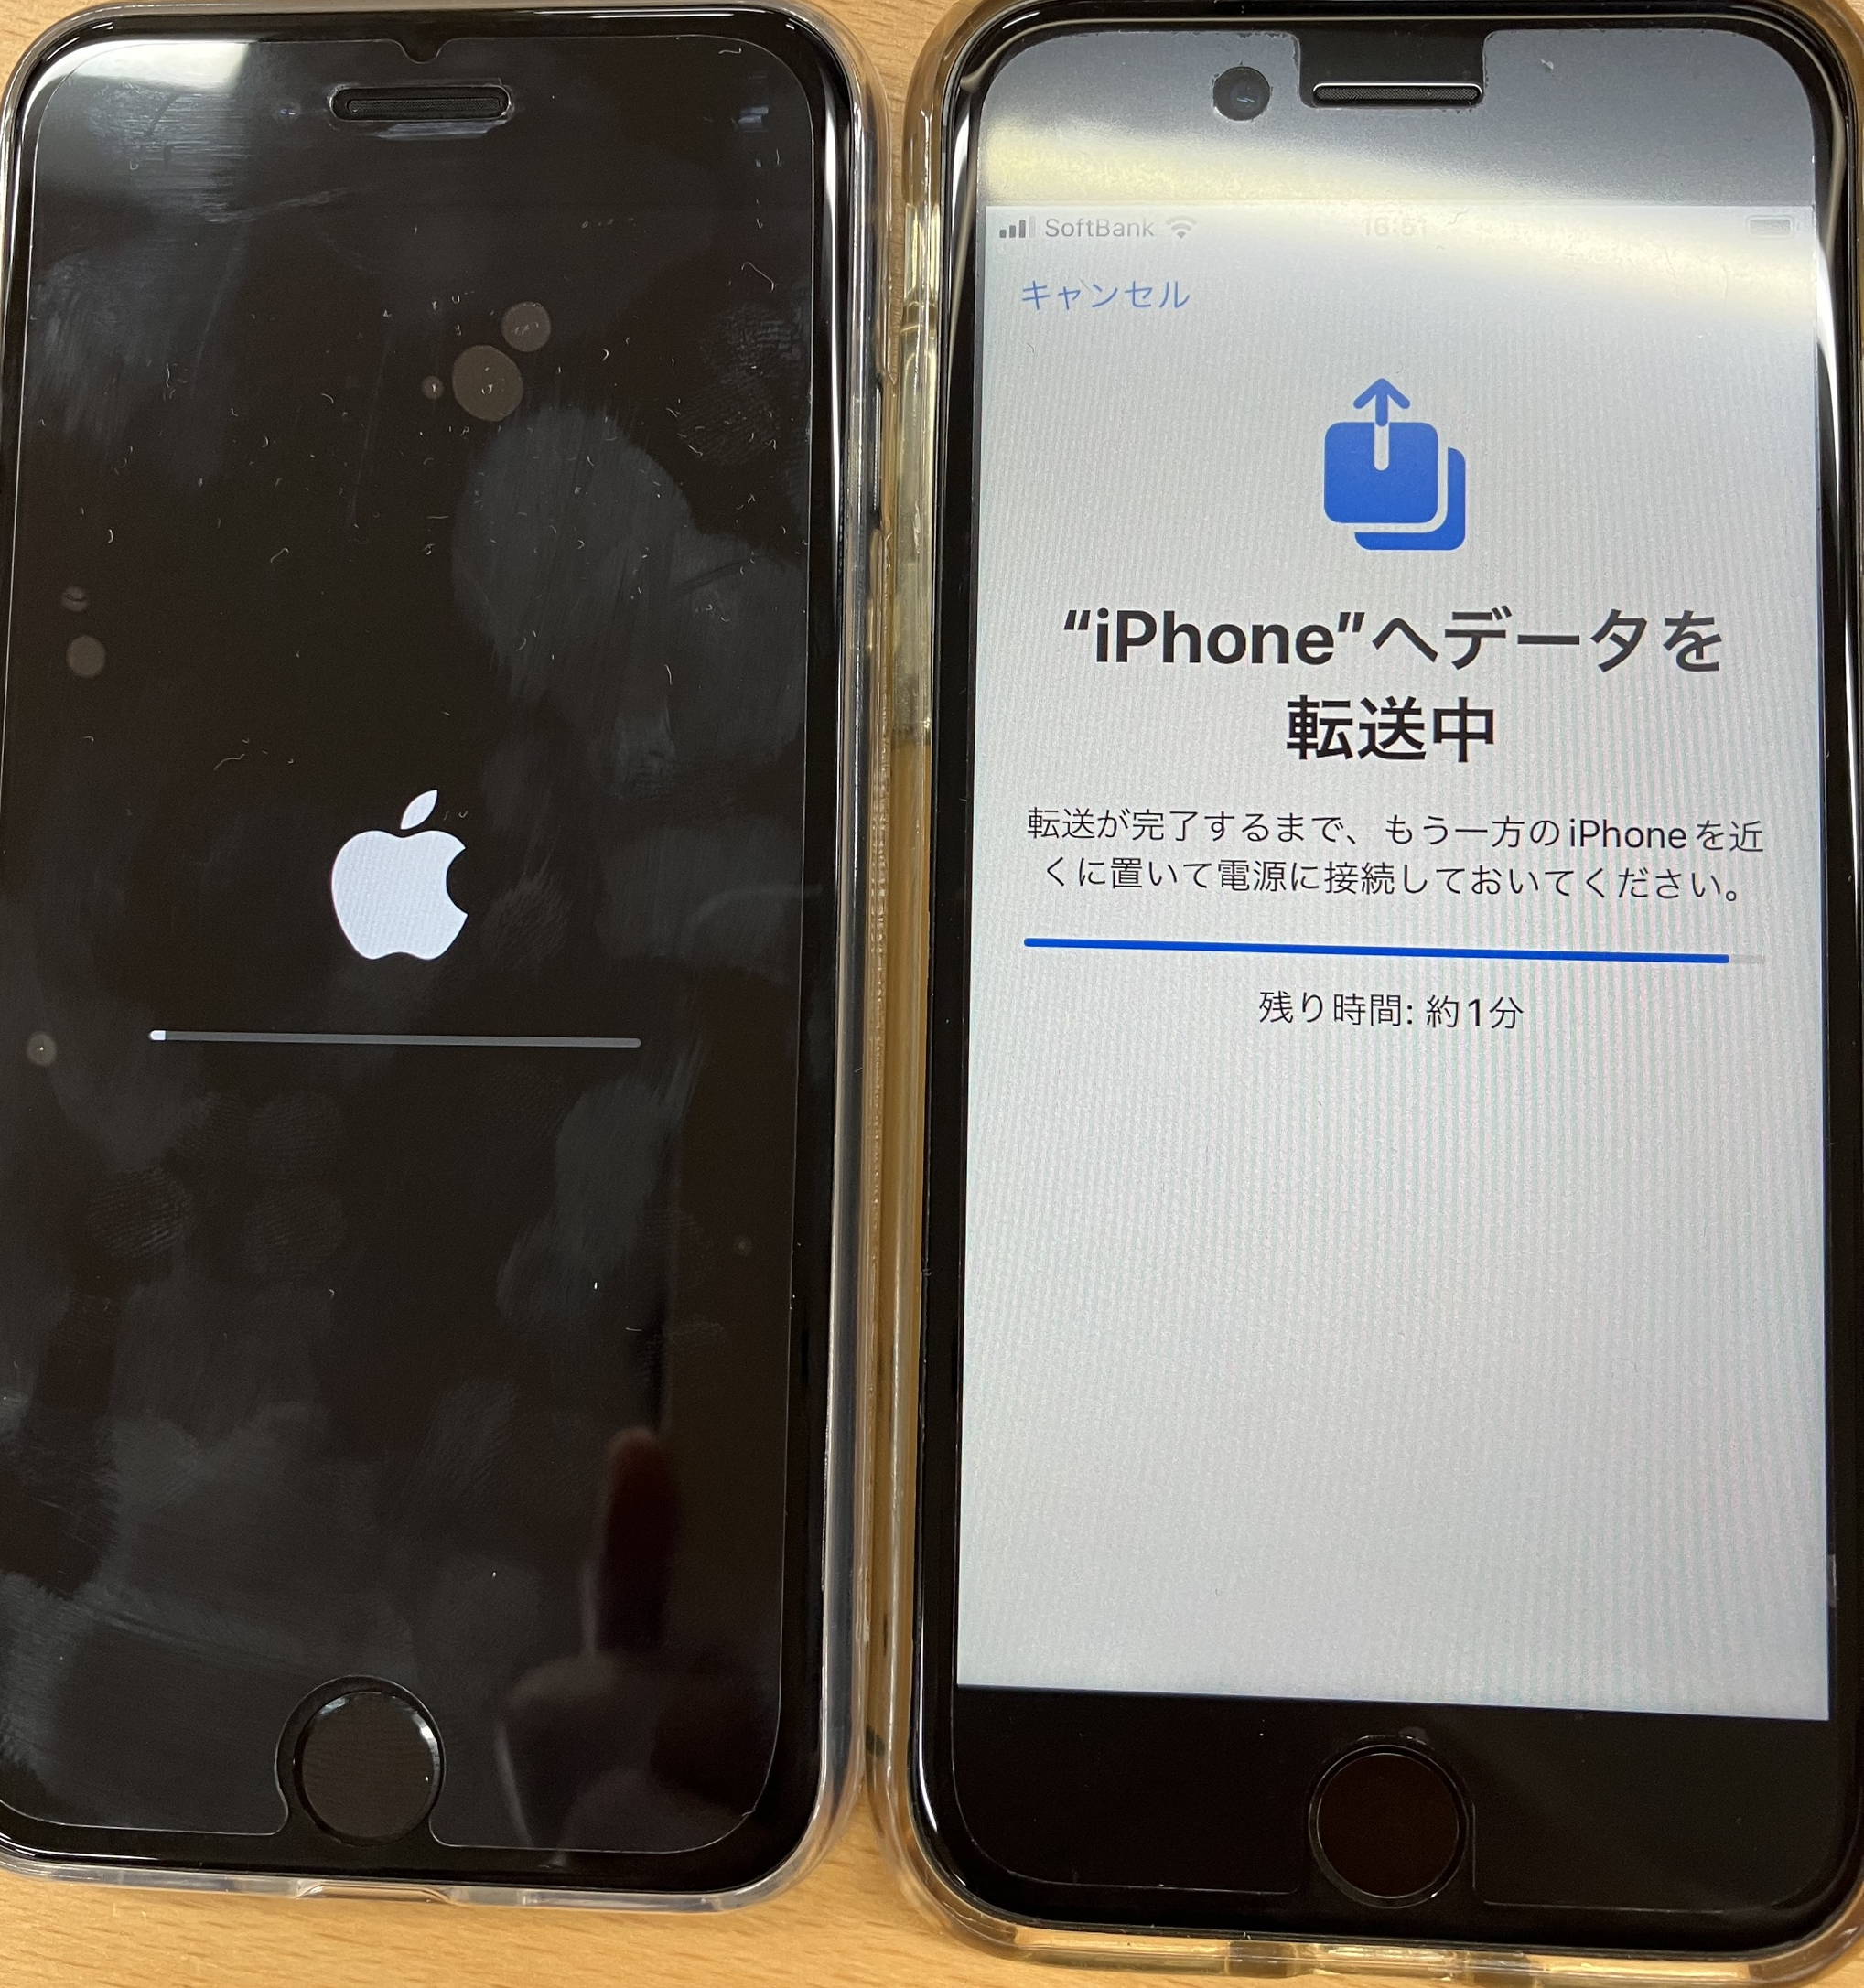 iPhone:古いiPhoneからのデータ転送が終了すると、新しいiPhoneは再起動を実行